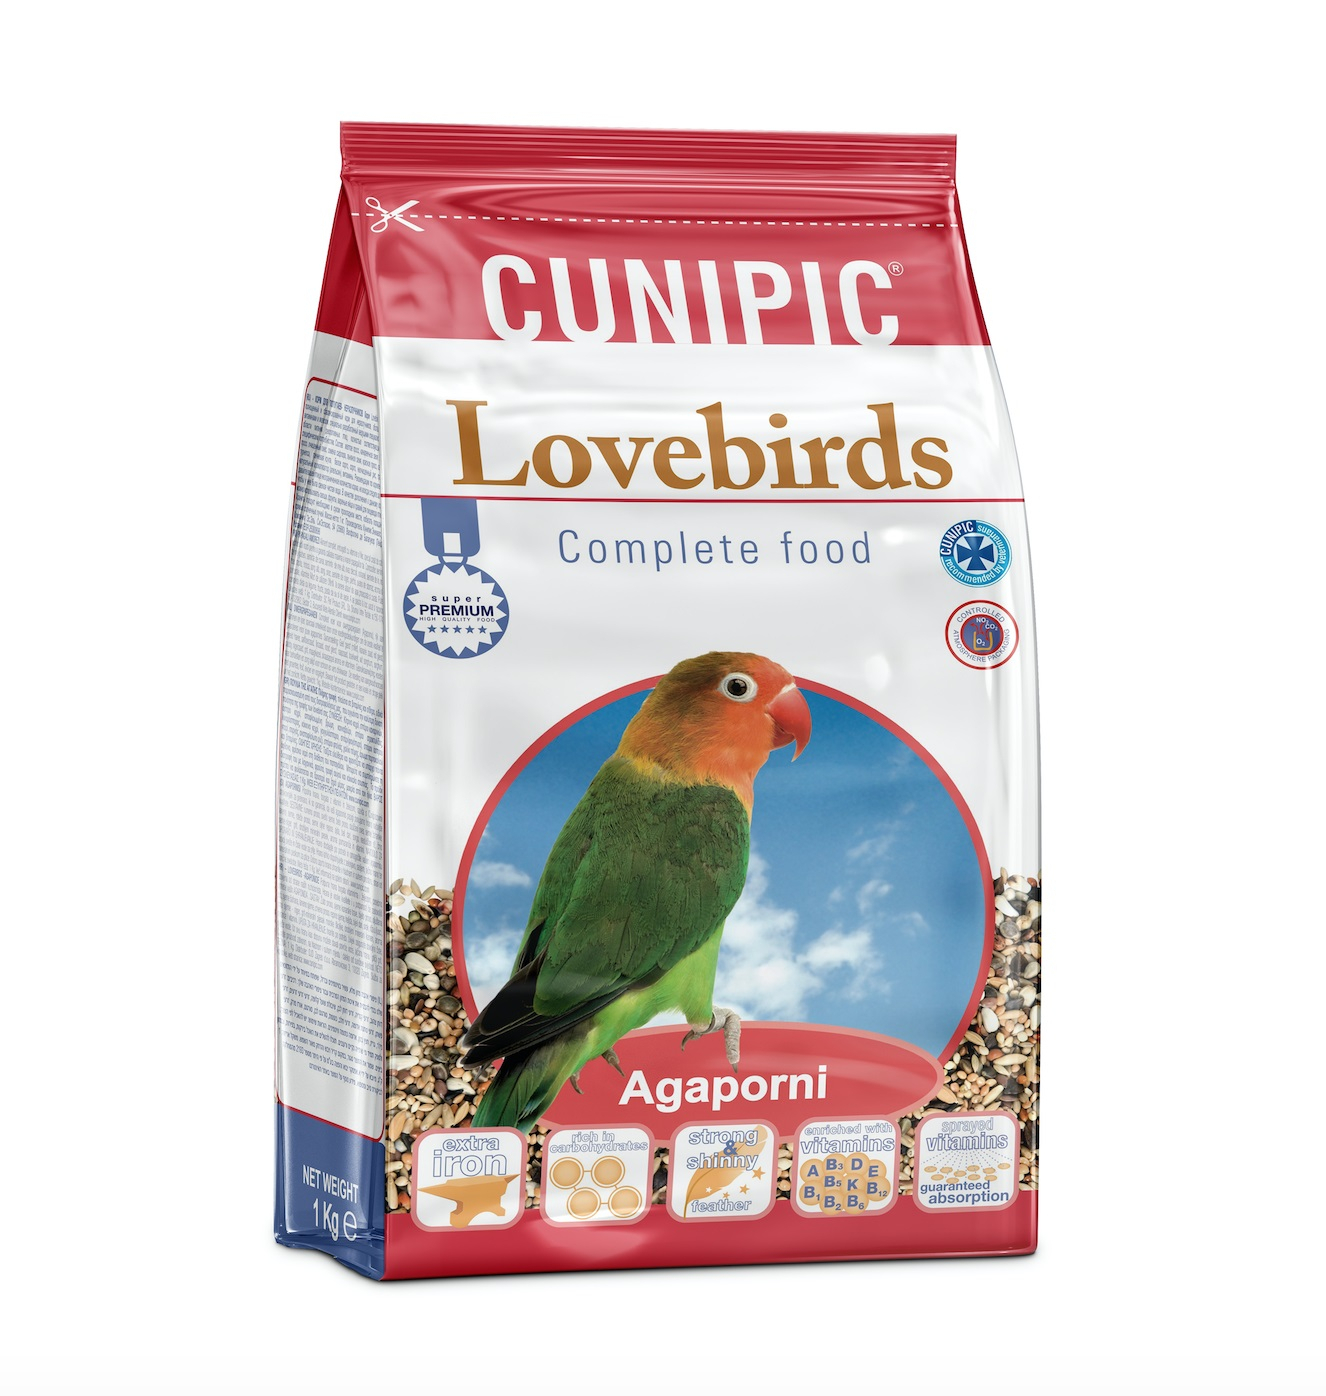 Cunipic Premium Love Birds Compleet voer voor dwergpapegaaien